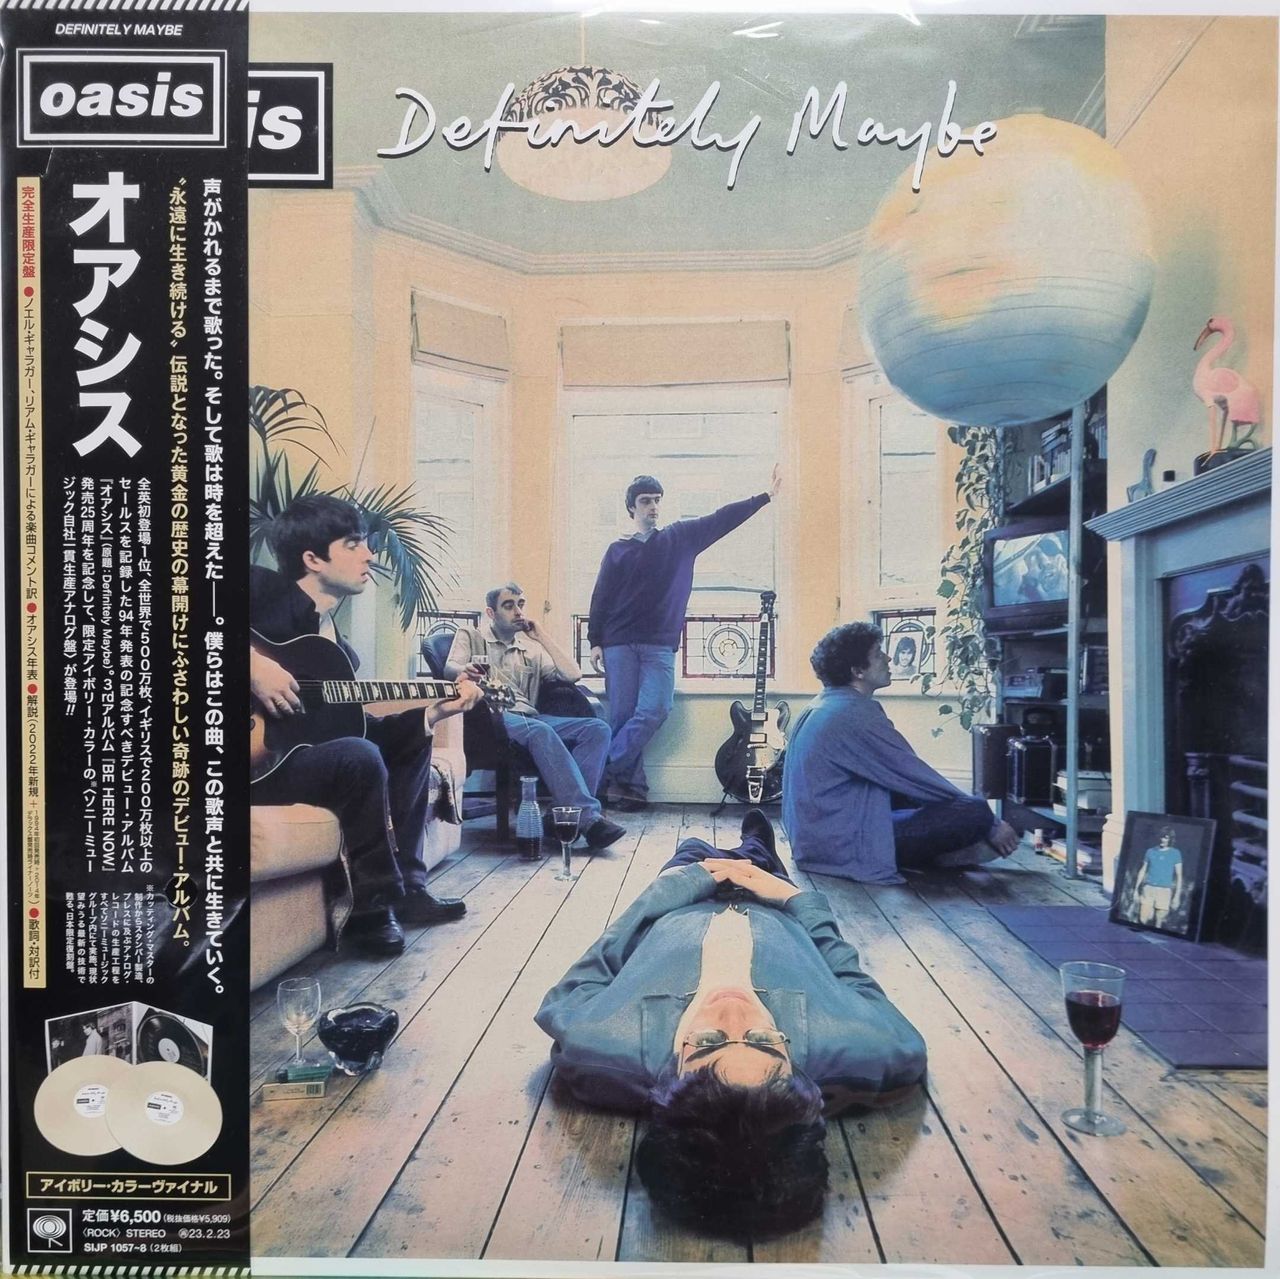 Oasis Definitely Maybe - Ivory Vinyl Japanese 2-LP vinyl set